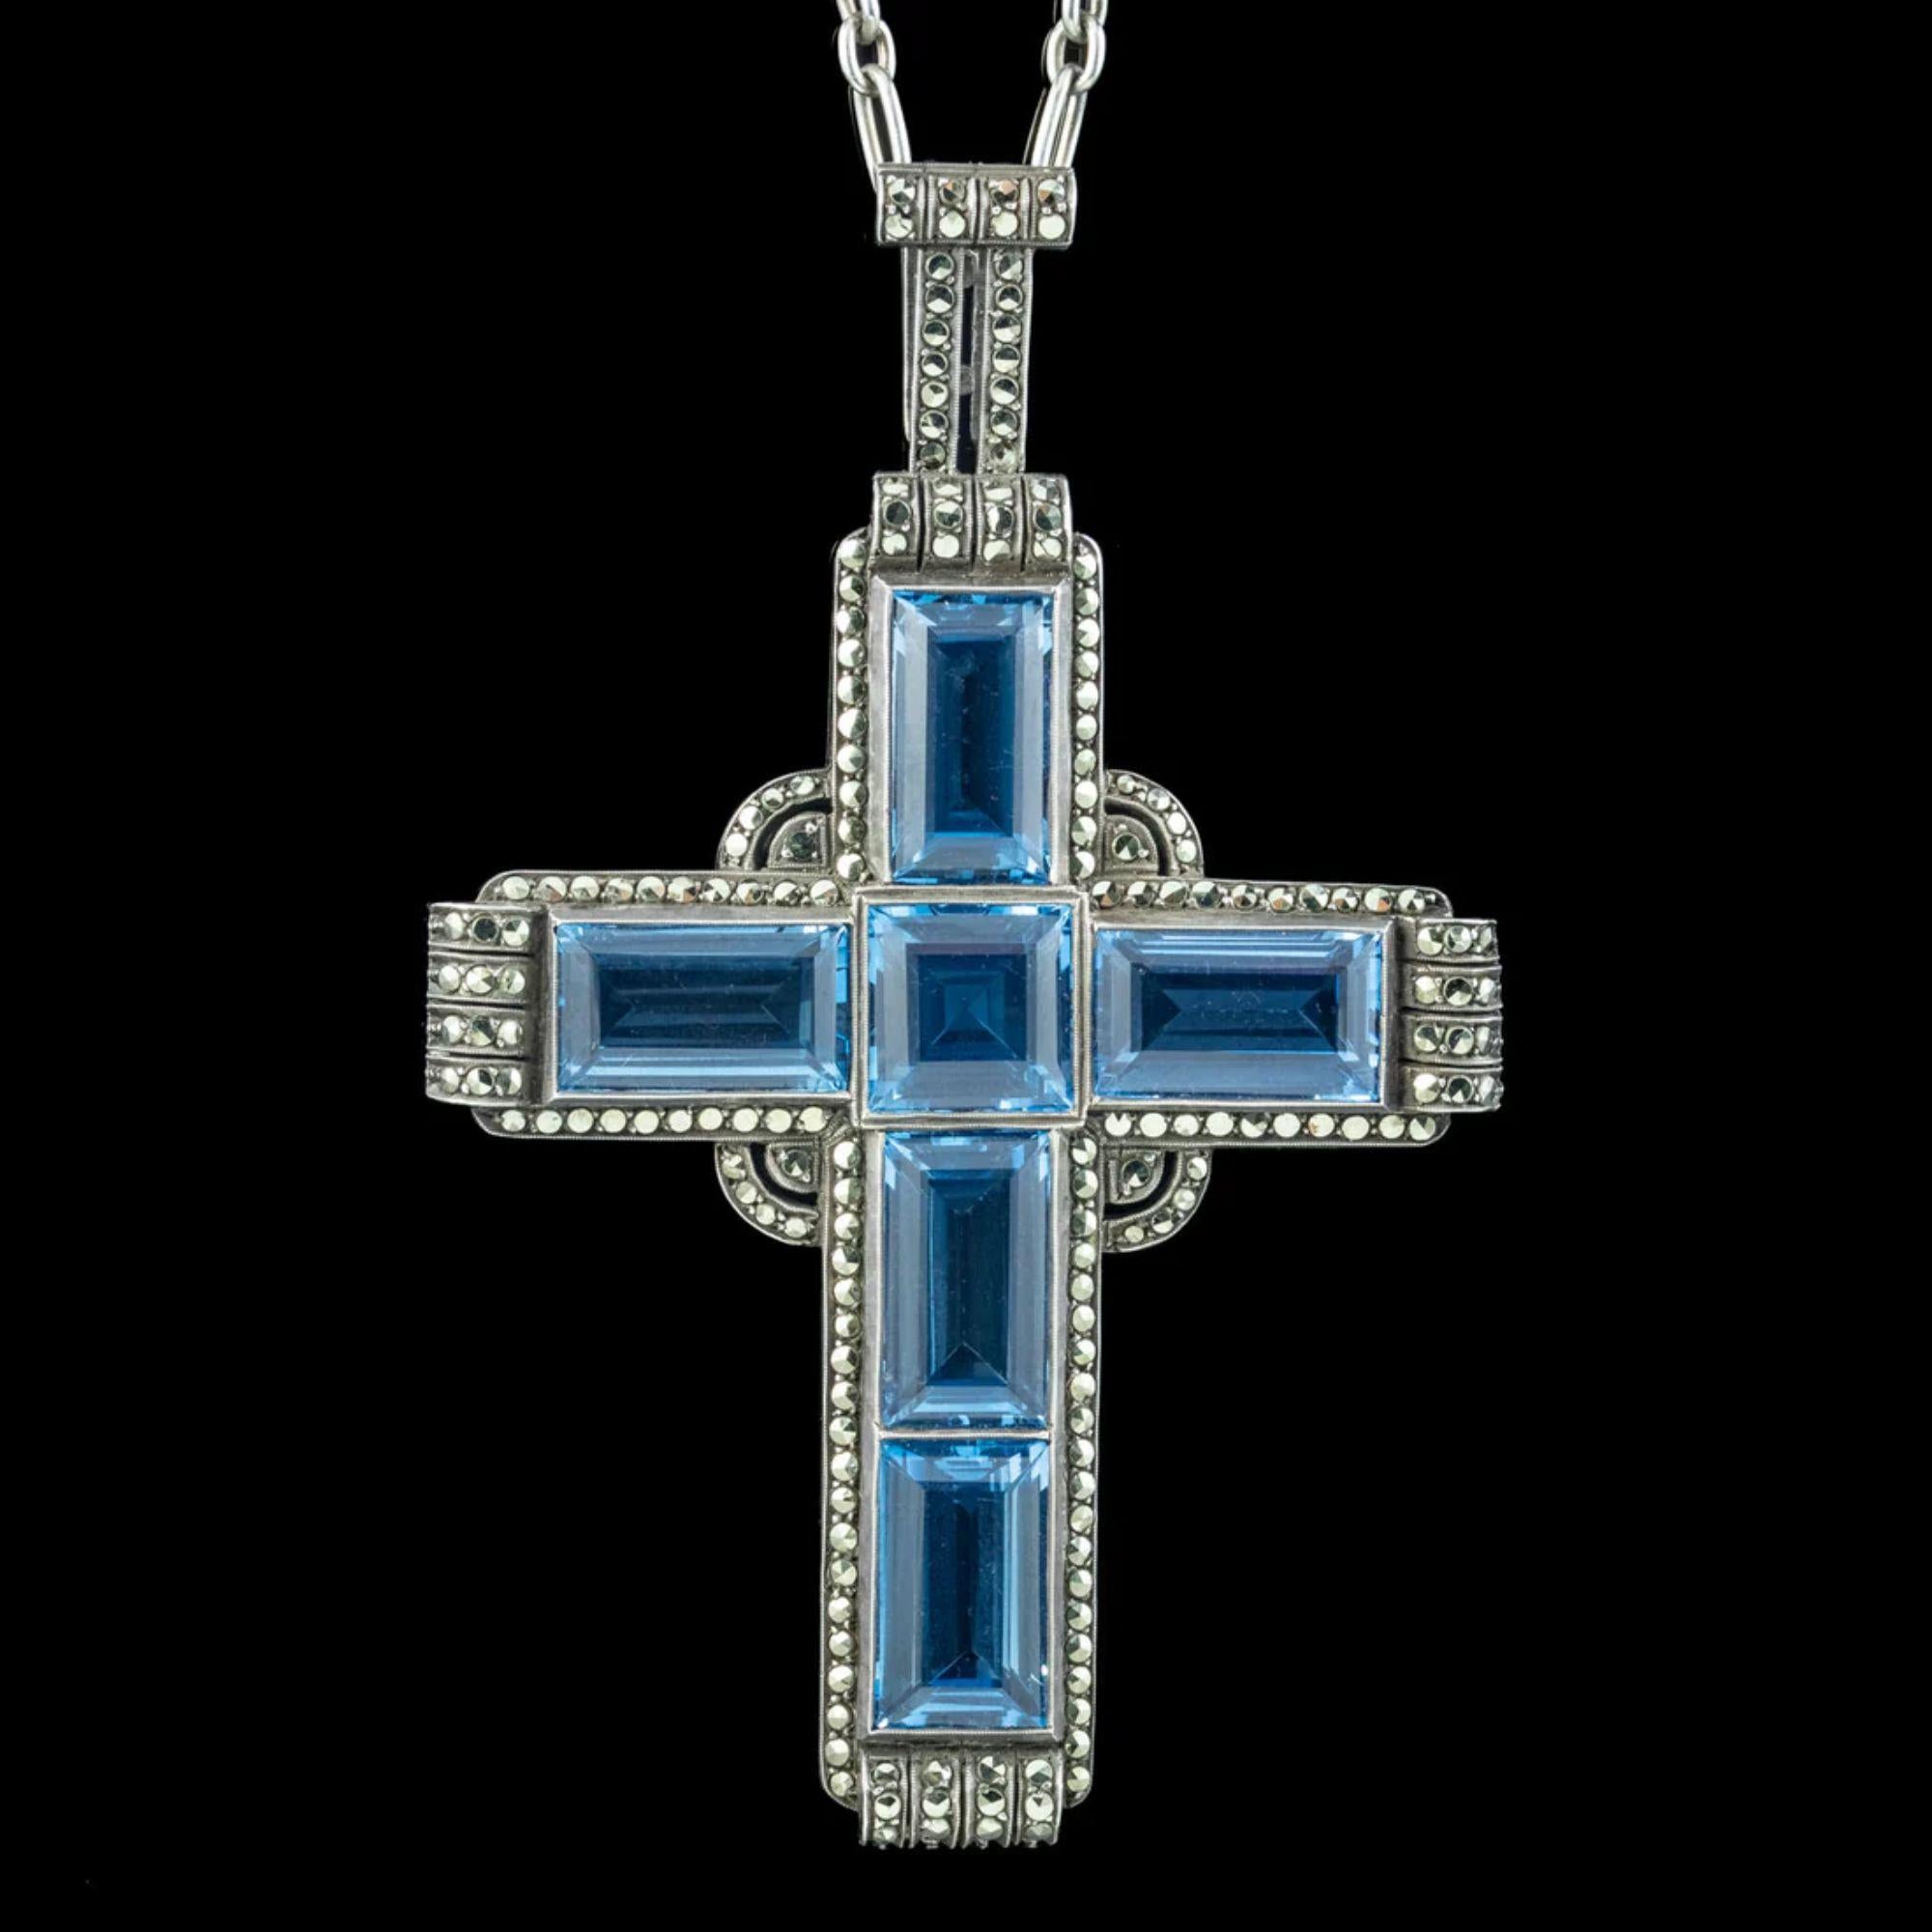 Un spectaculaire pendentif en forme de croix de style Art déco réalisé par le célèbre joaillier allemand Theodor Fahrner au début des années 1900. La croix est sertie de six magnifiques spinelles bleus synthétiques taillés en escalier, totalisant